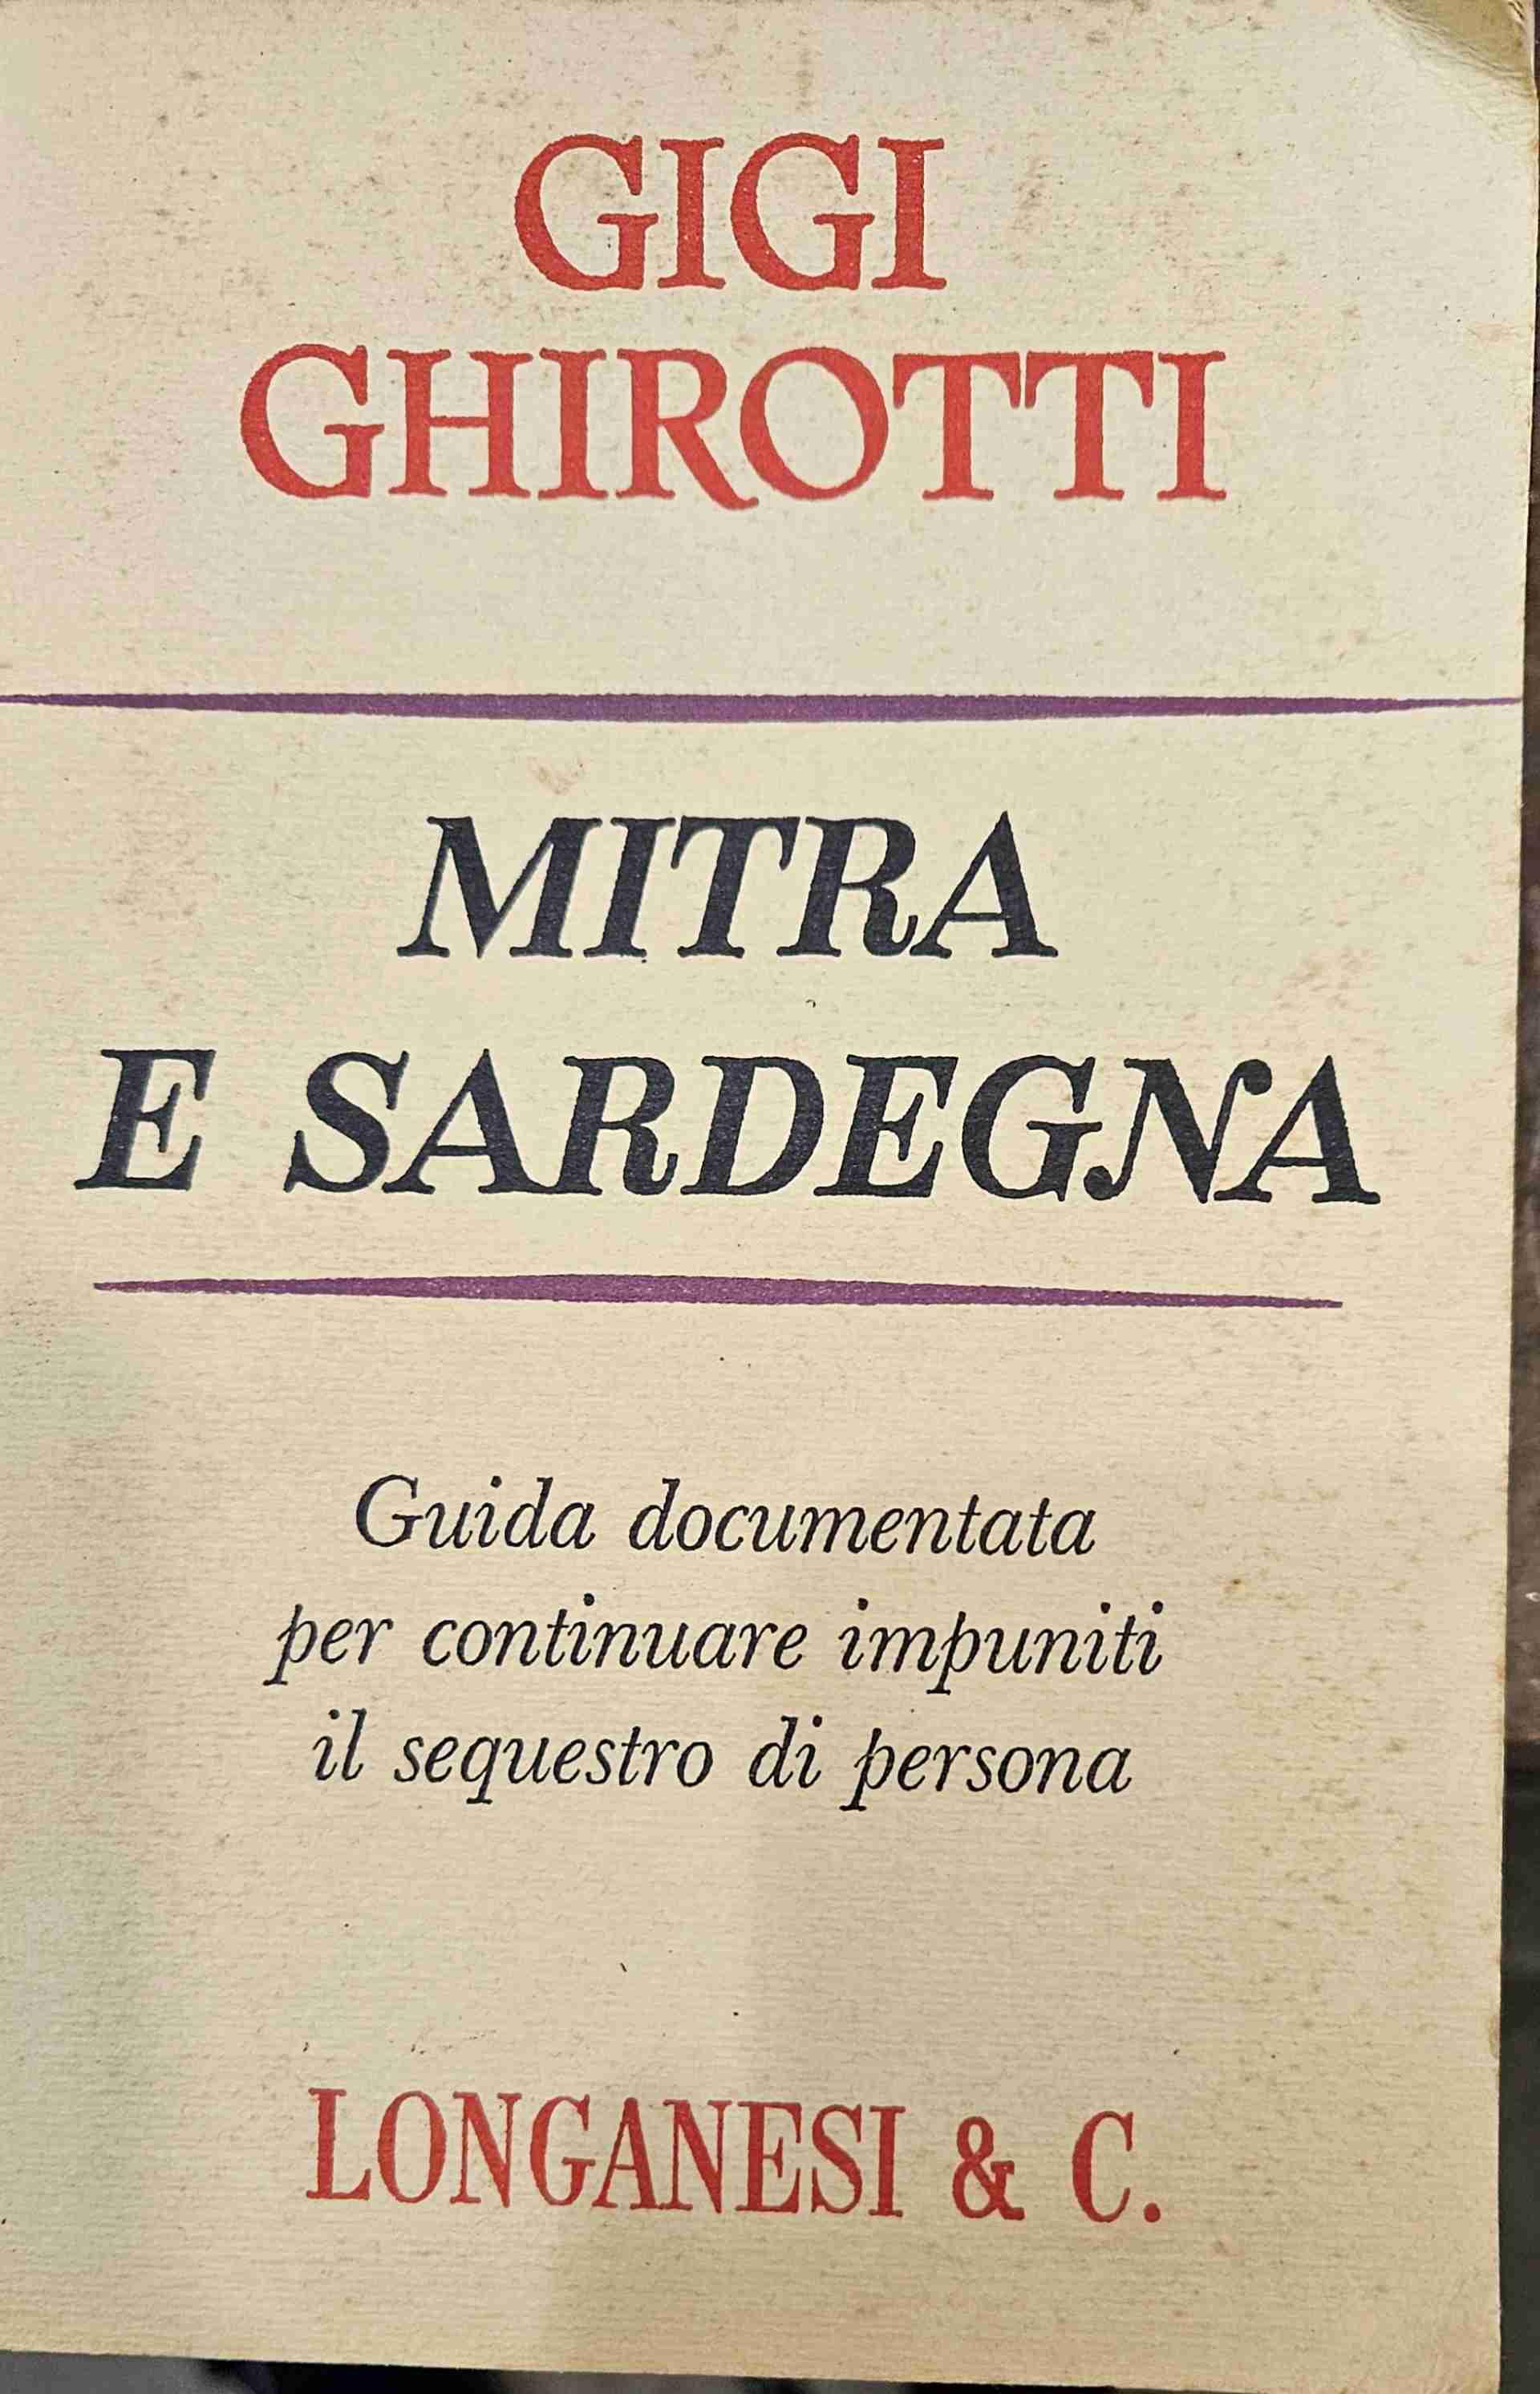 Mitra e Sardegna - Guida documentata per continuare impuniti il sequestro di persona